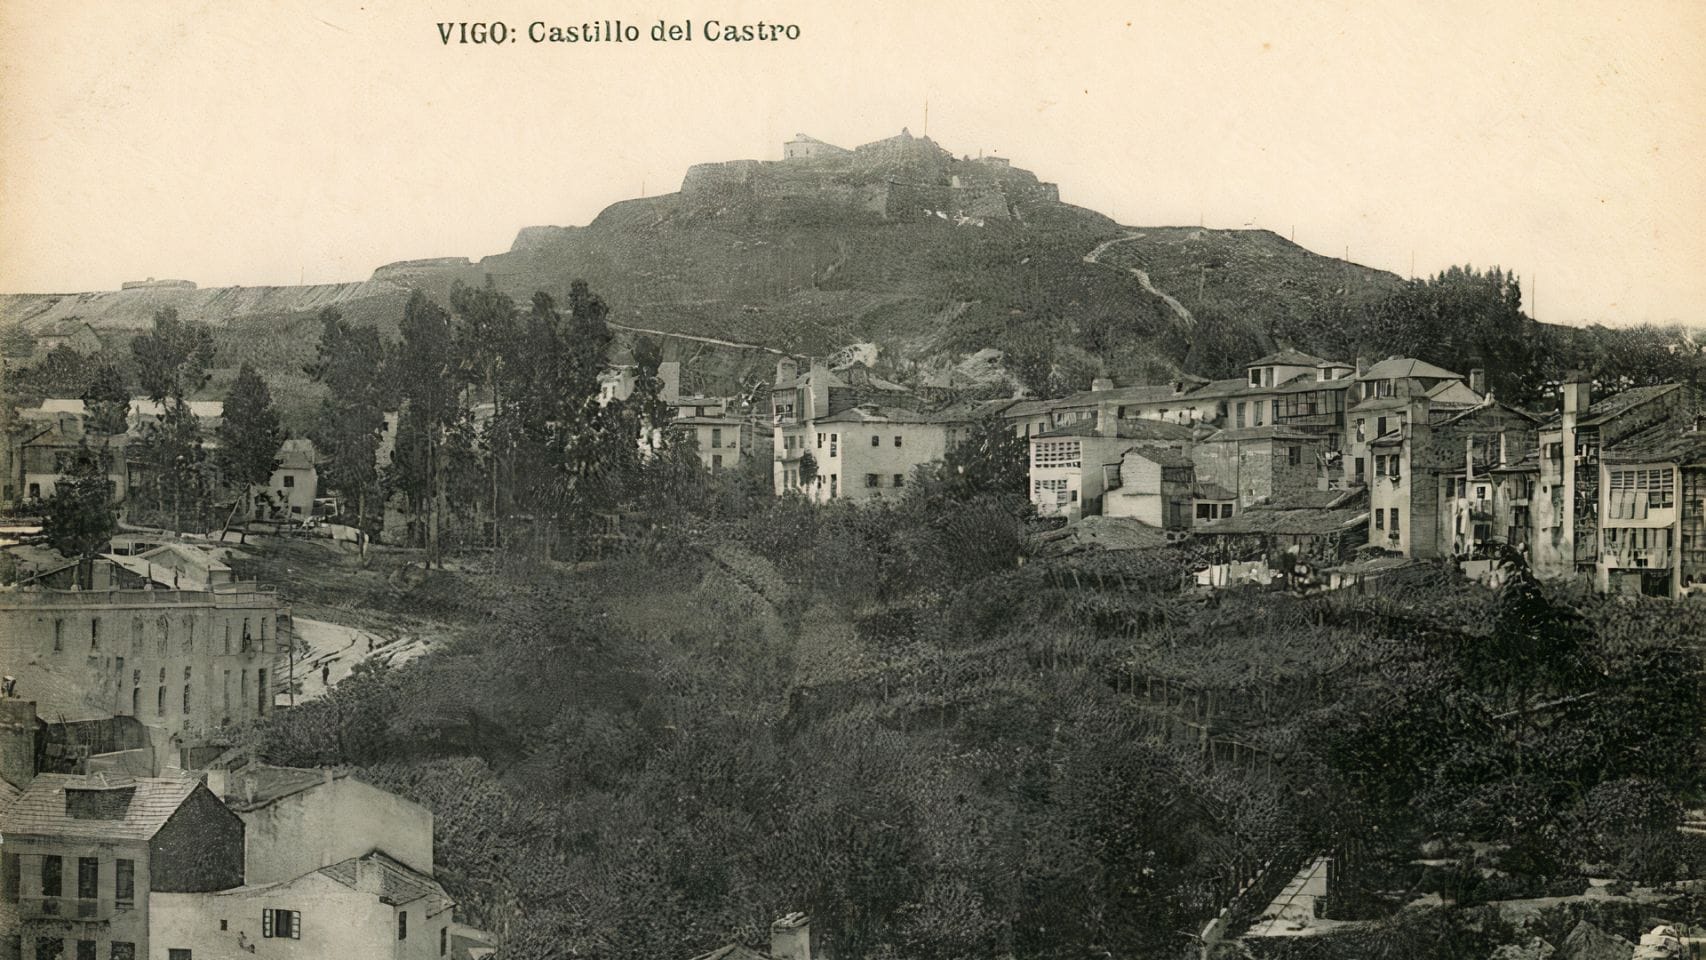 Vista del castillo del monte de O Castro, en Vigo, en torno a 1920.